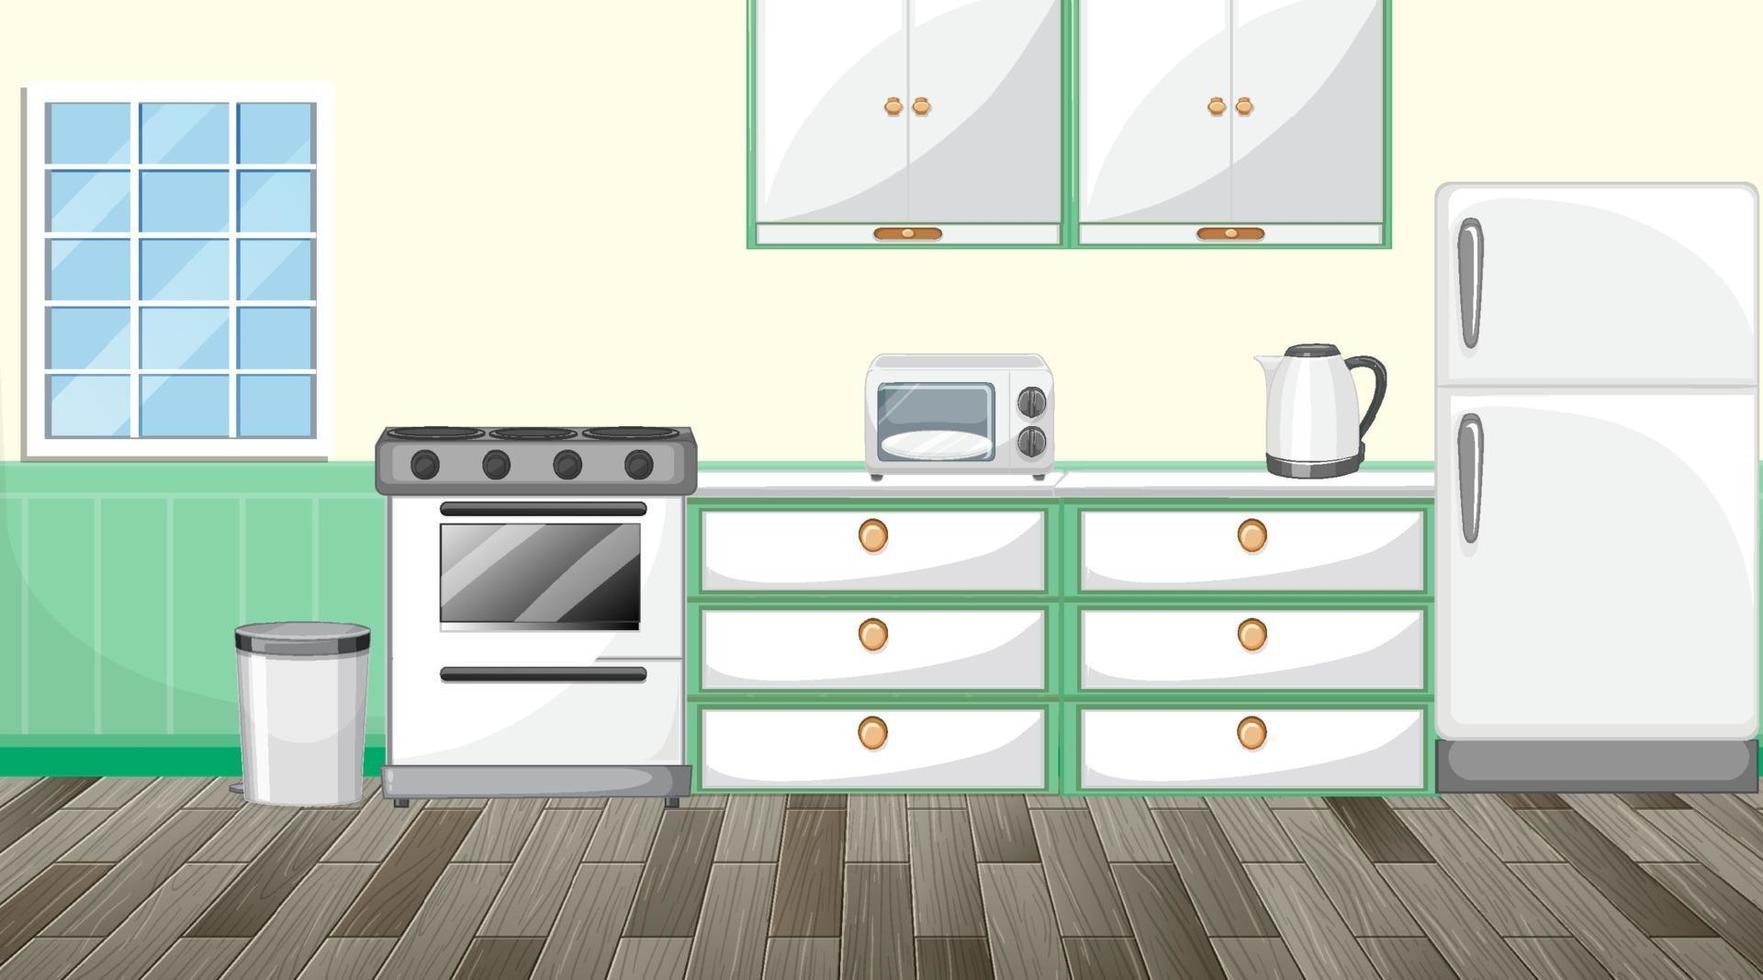 Kitchen interior design with furniture vector